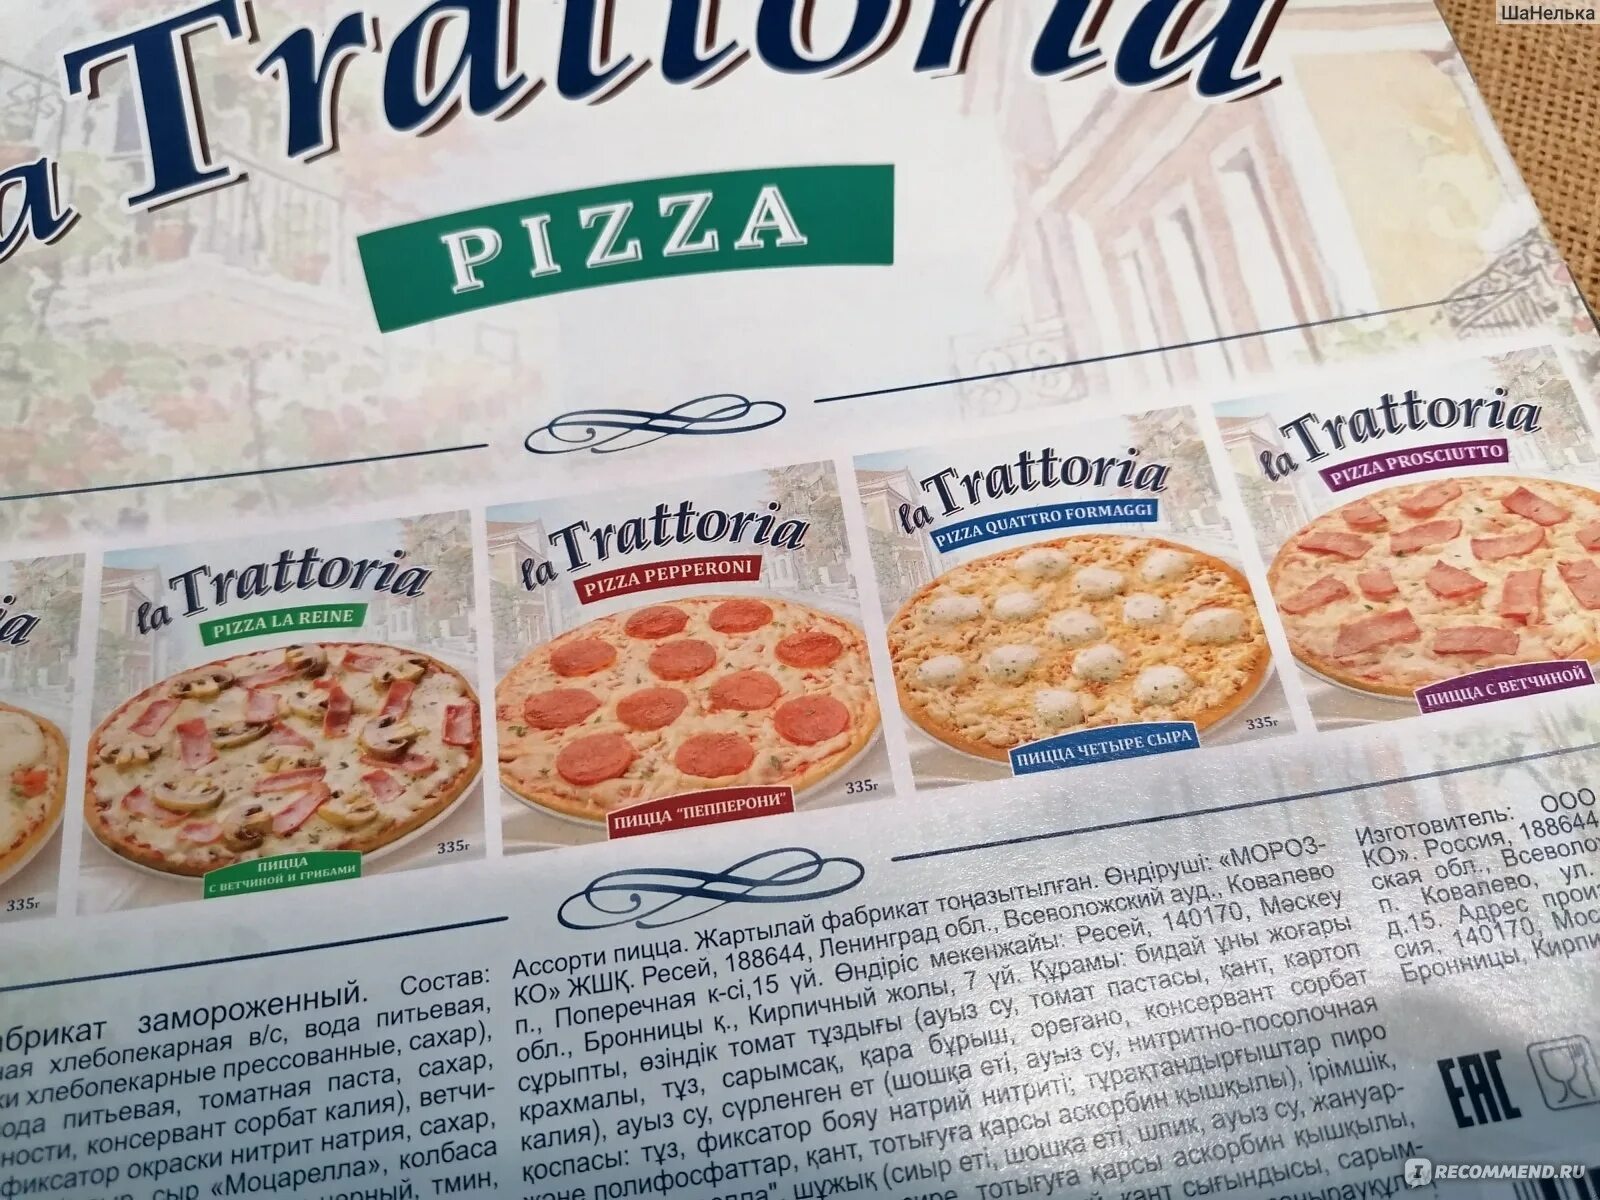 Пицца la Trattoria. 100 Г пиццы. Моцарелла для пиццы Trattoria. Пицца Траттория ассорти. Пицца килокалории